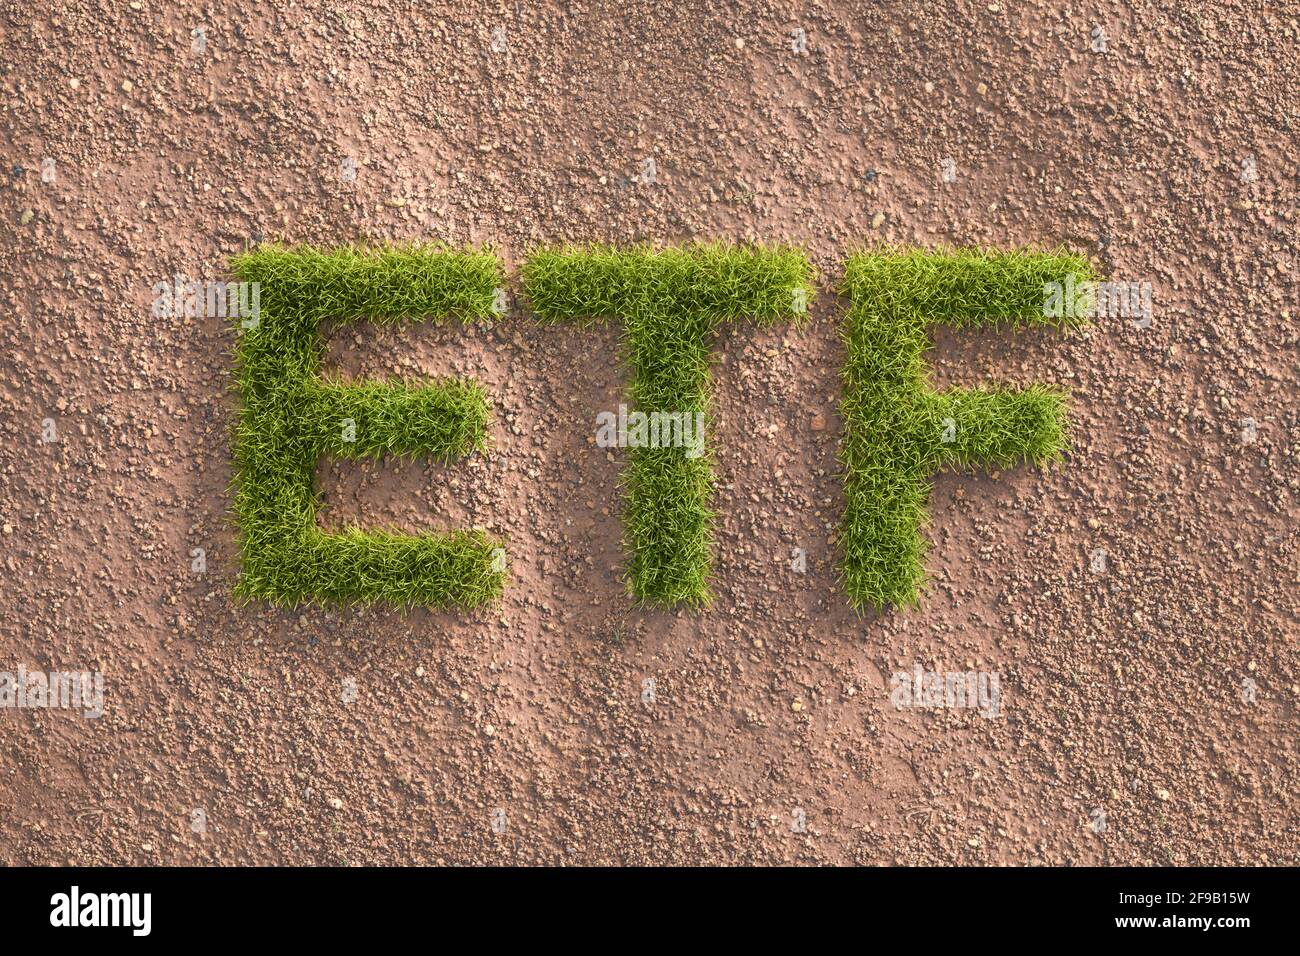 Green grass lettres ETF dans un paysage aride. Concept pour les fonds négociés en bourse investissant selon les normes ESG (environnement gouvernance sociale). Banque D'Images